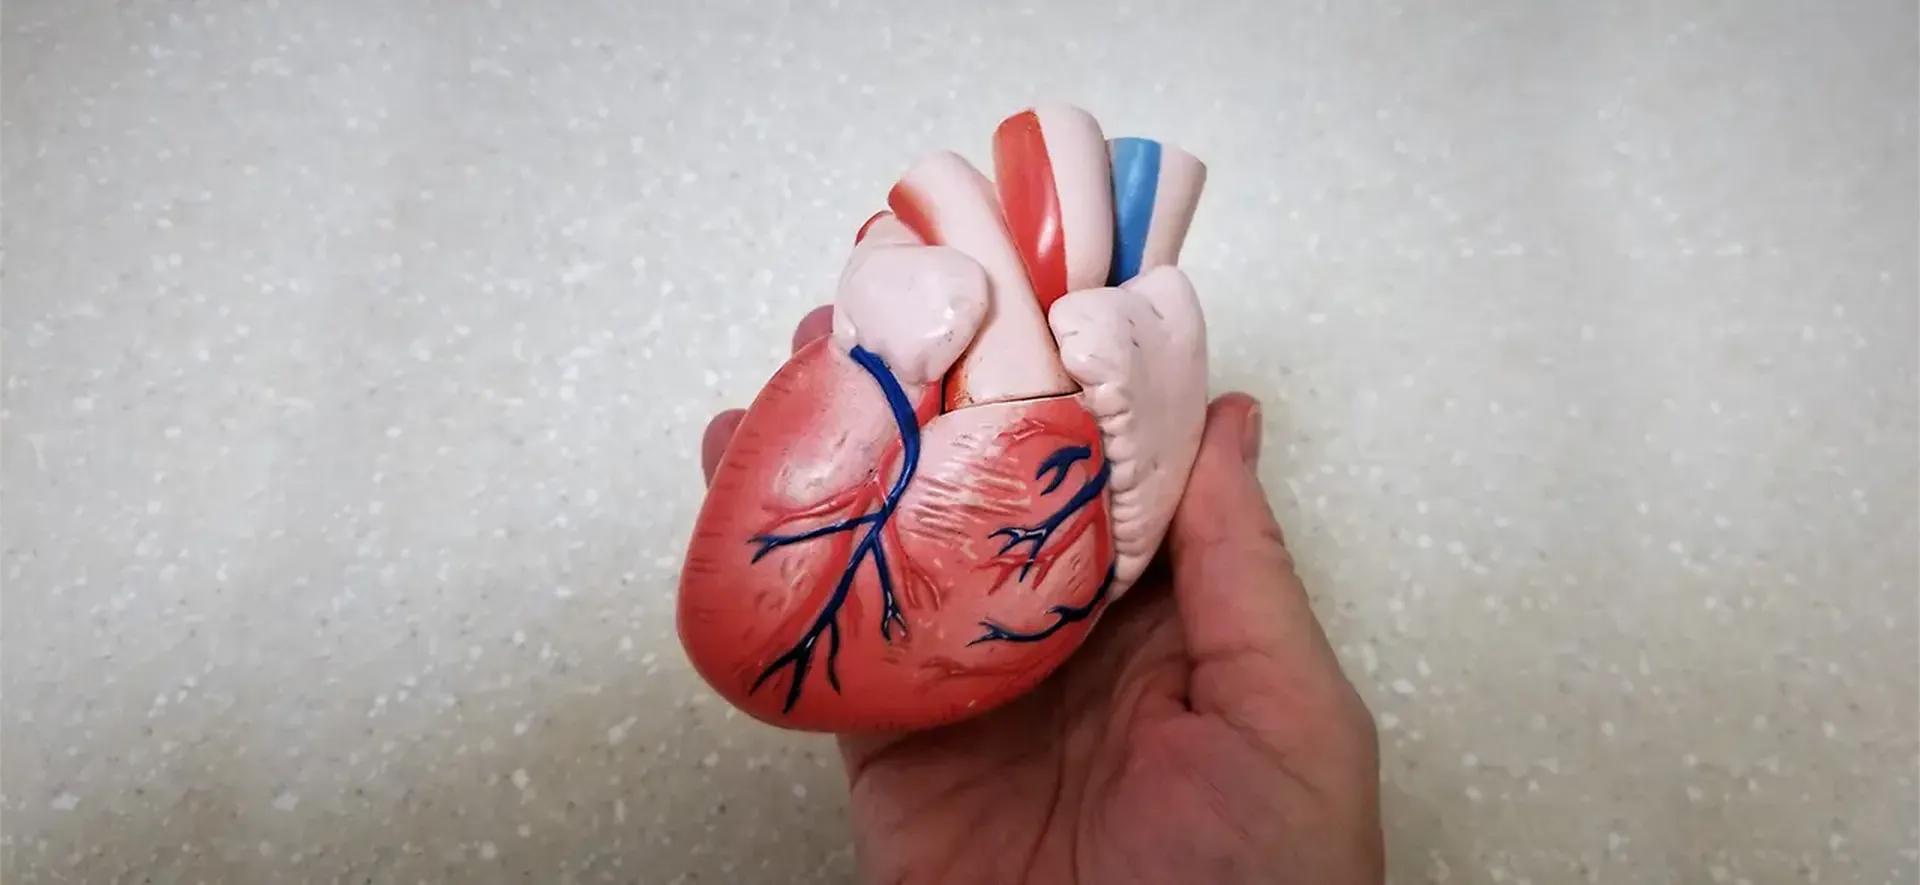 Dia Internacional da Cardiologia Intervencionista: Ministério da Saúde alerta para os cuidados com o coração